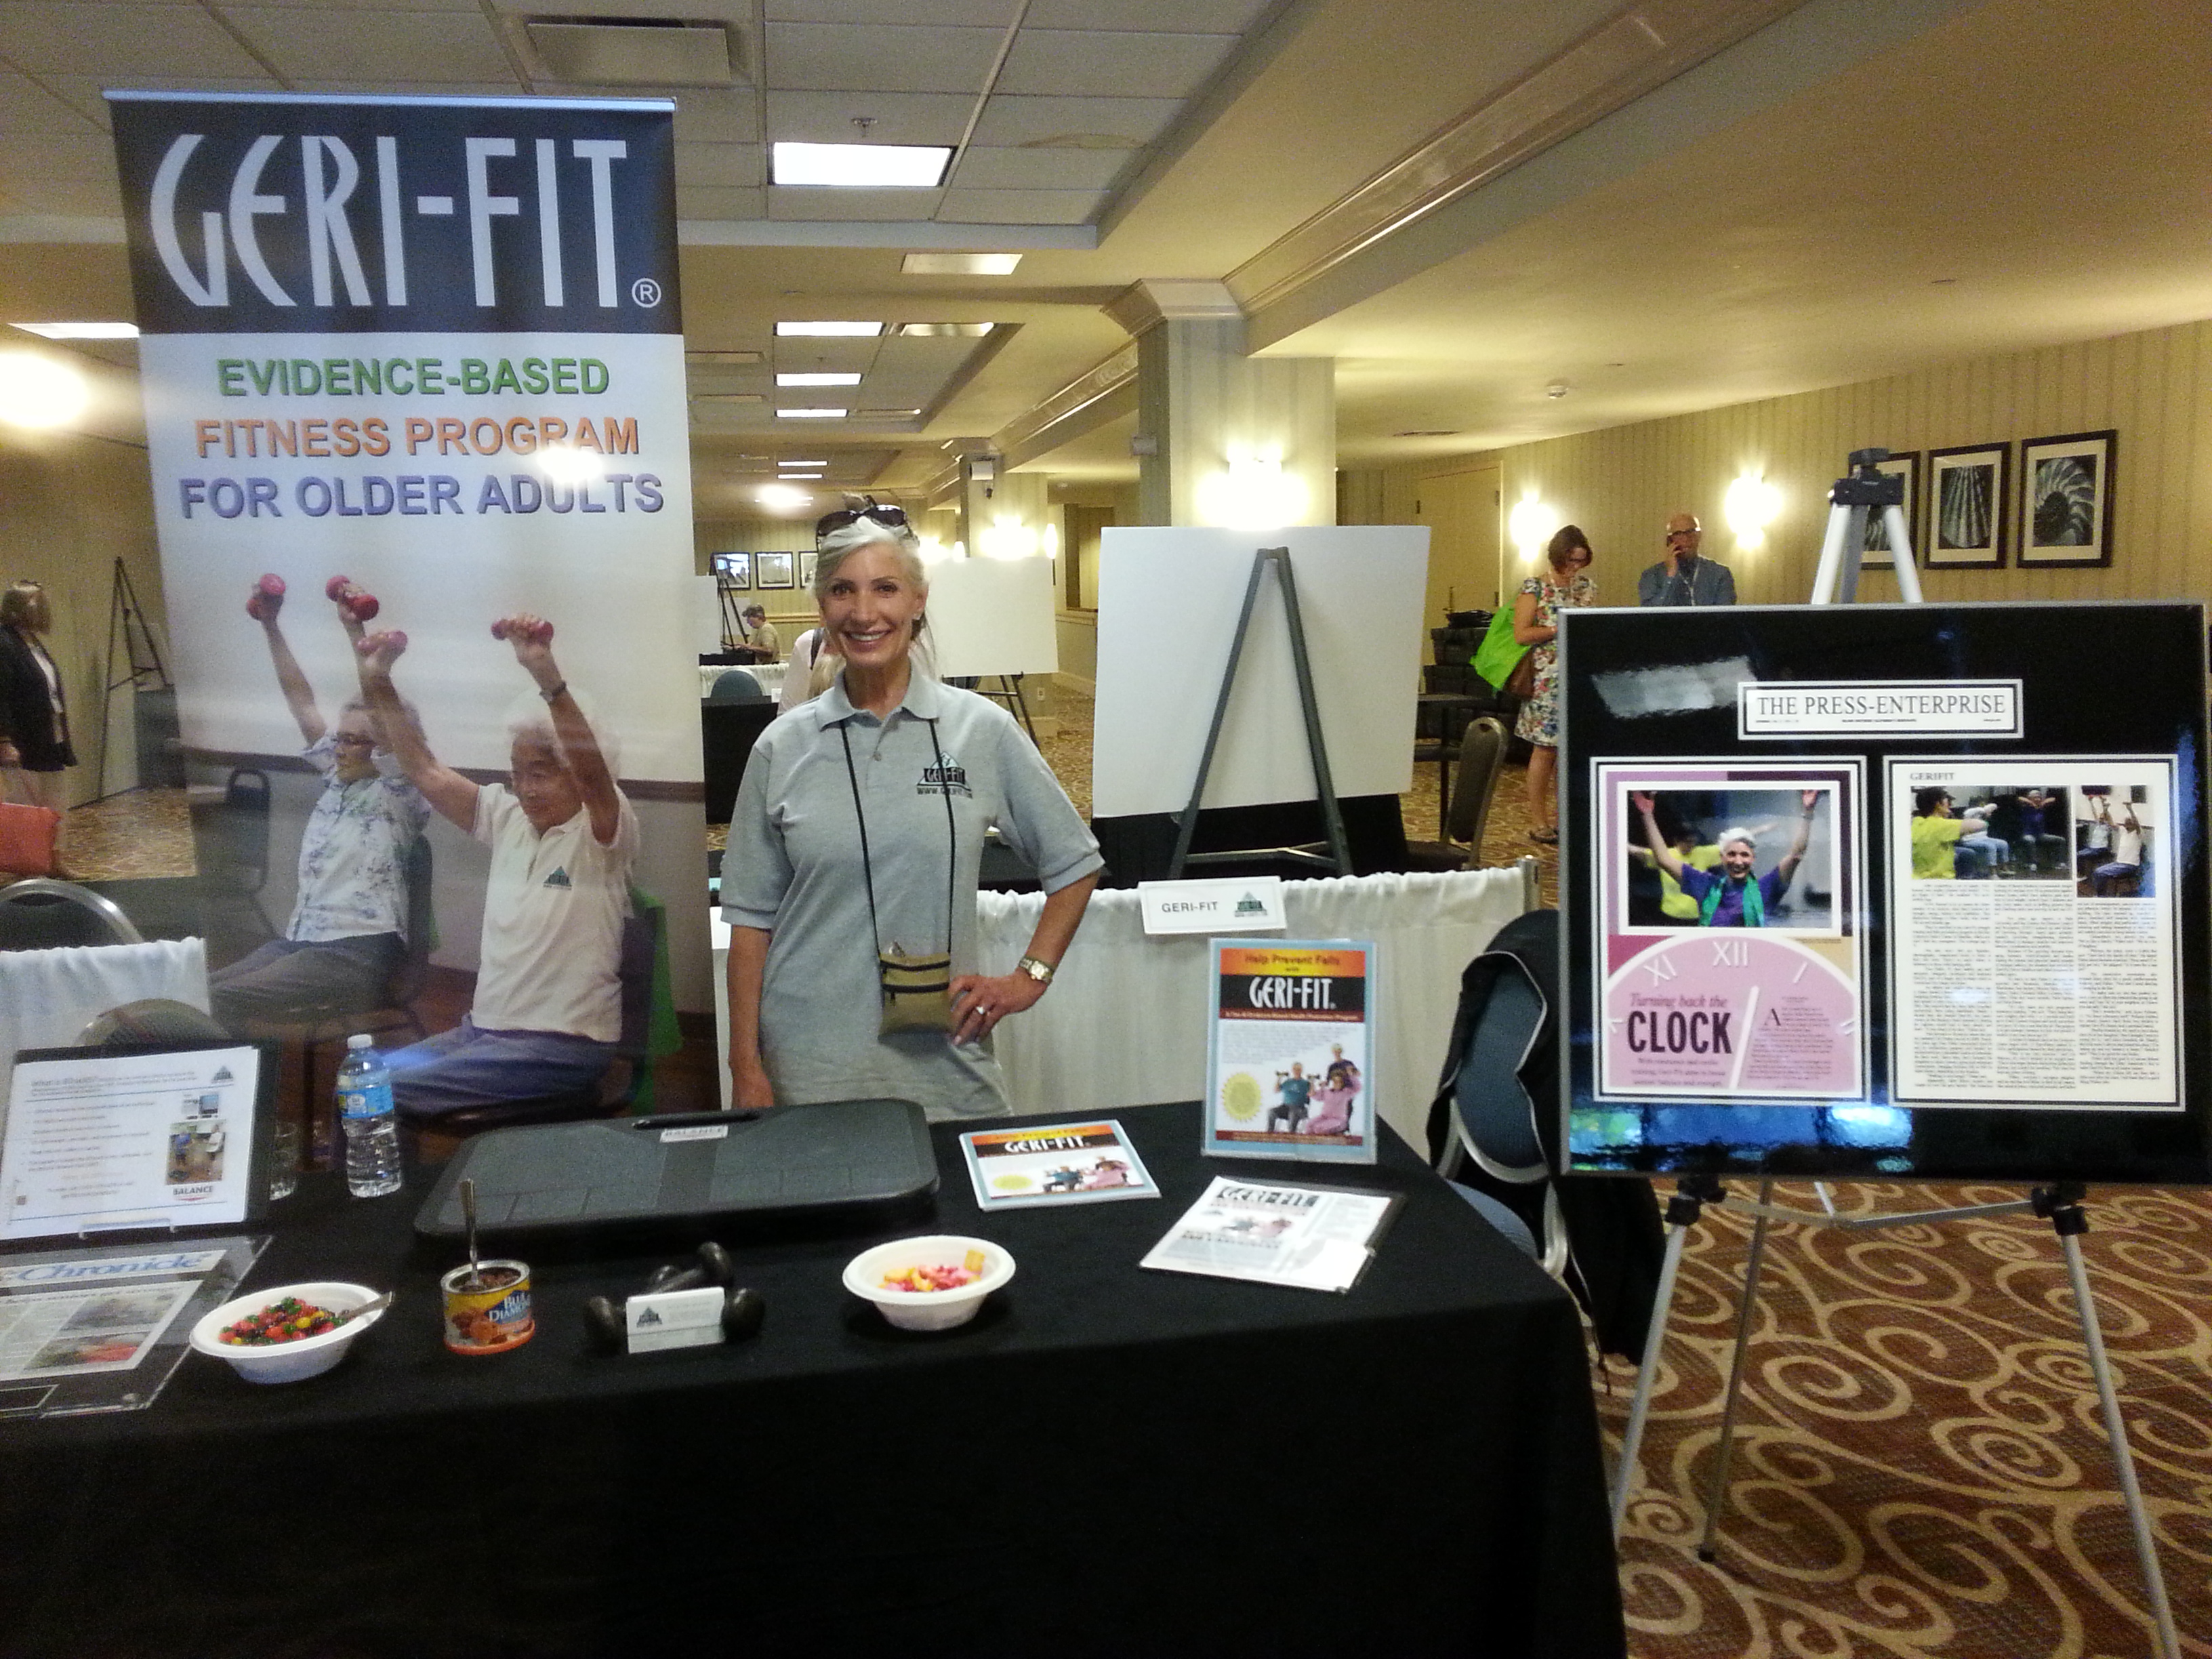 Geri-Fit is an evidence-based health promotion program for older